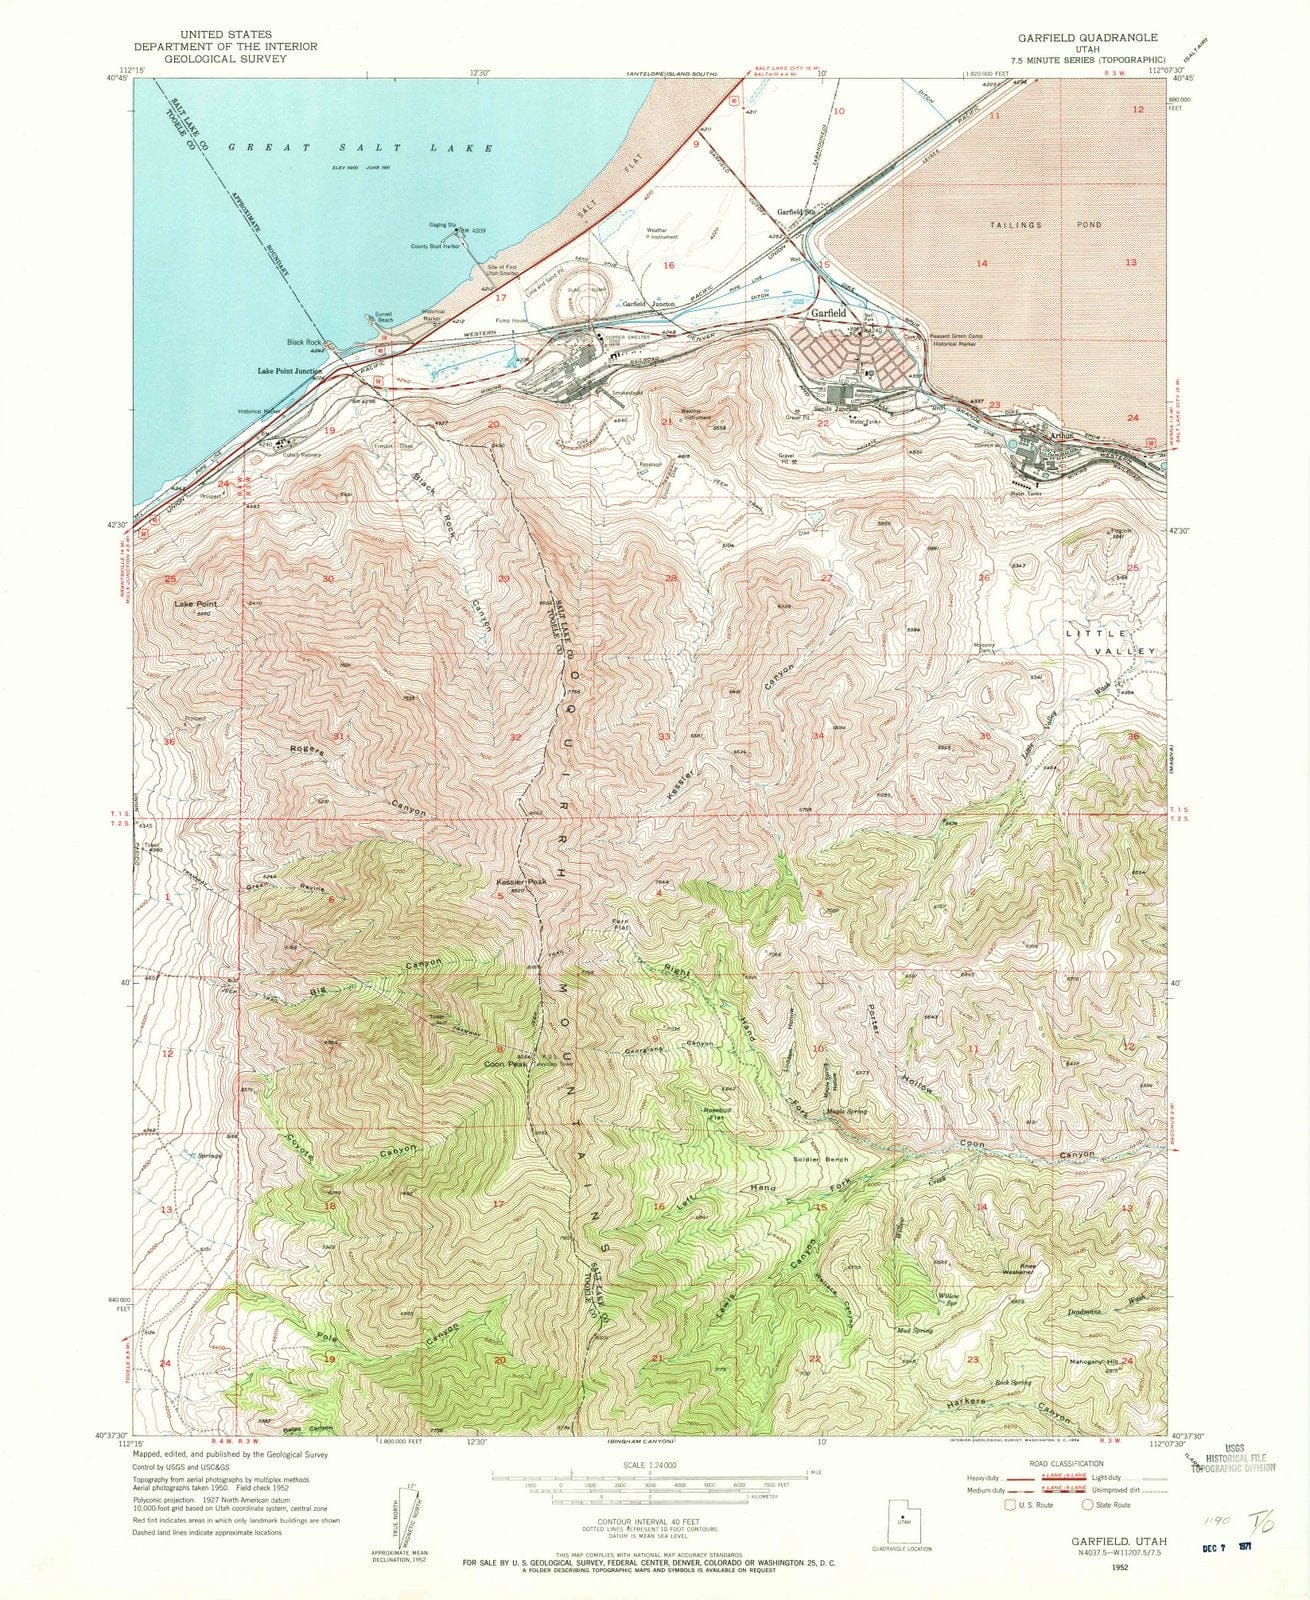 1952 Garfield, UT - Utah - USGS Topographic Map